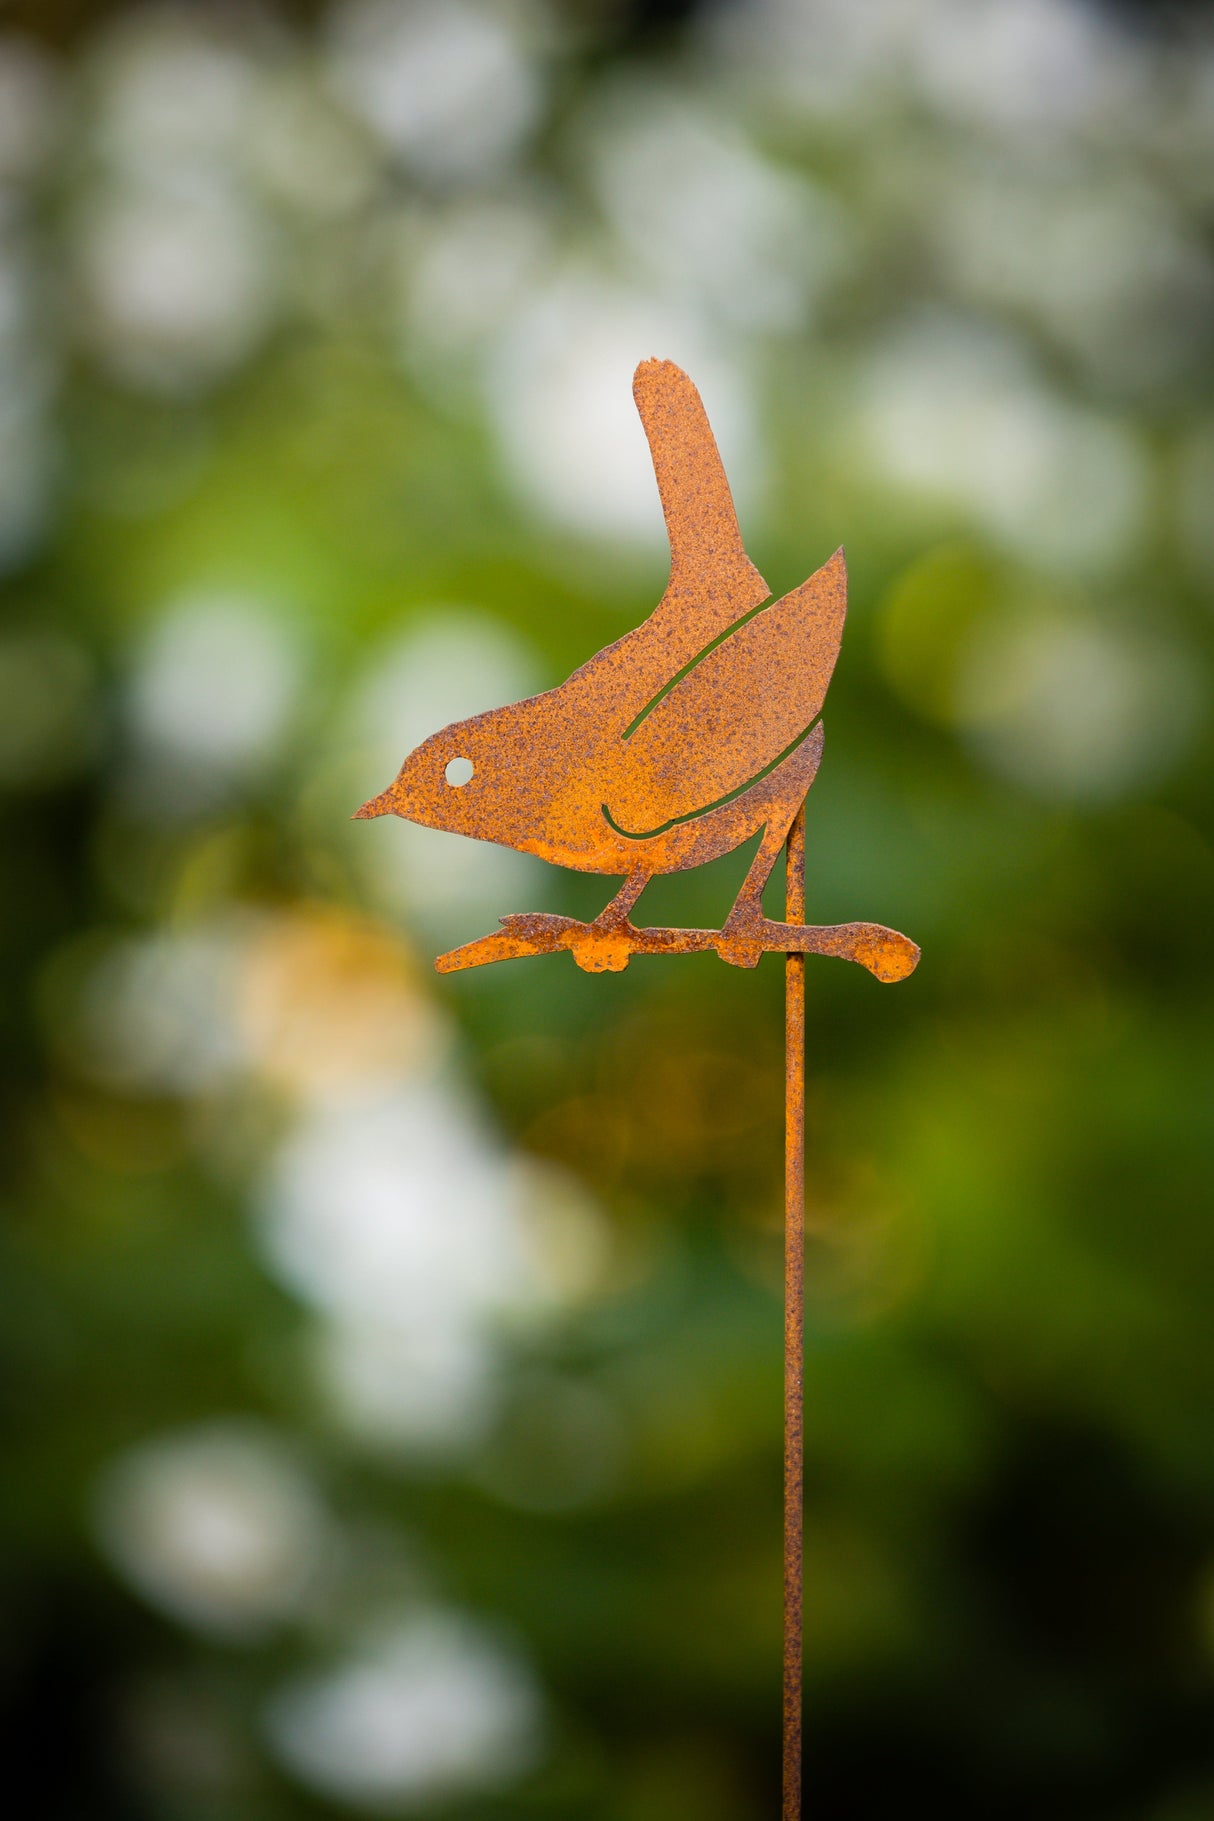 Wren on Branch Pick - Rusty Birds - Unique Outdoor Art